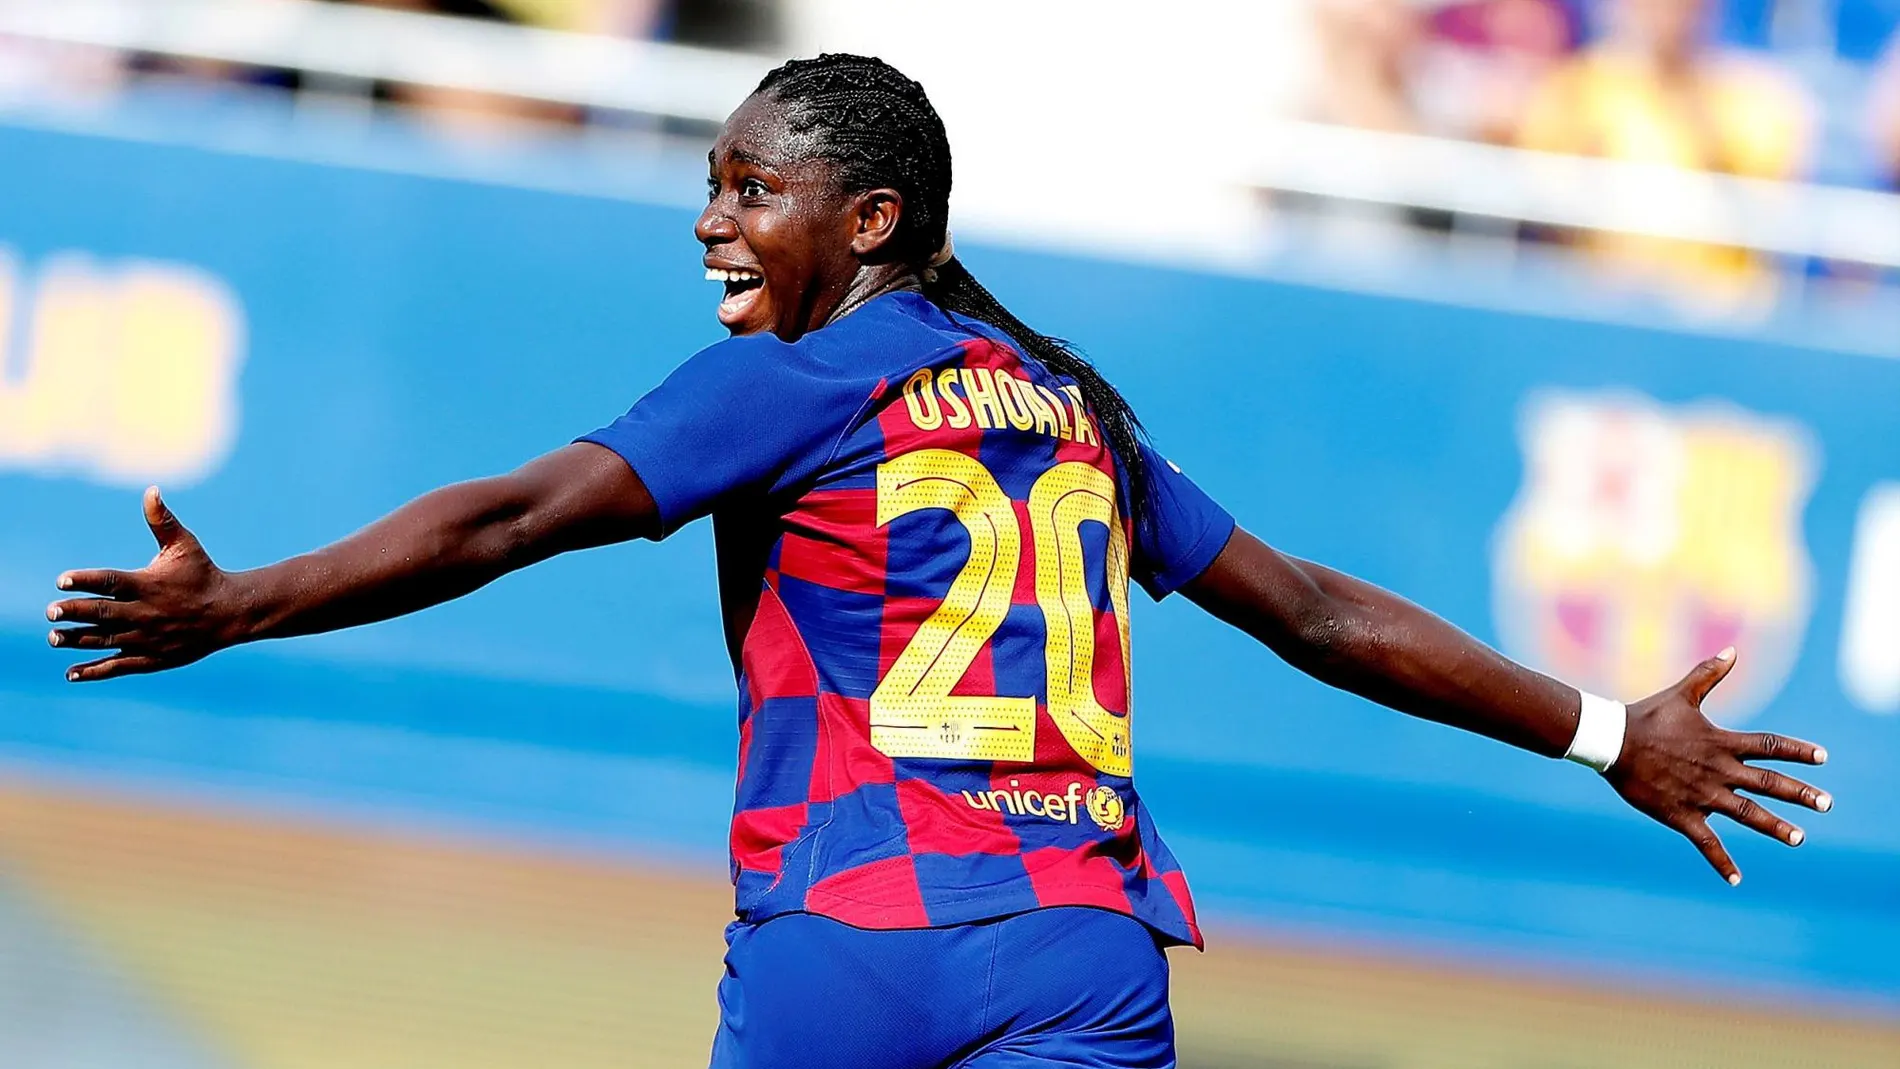 [GRAF6188. BARCELONA, 21/09/2019.- La jugadora del FC Barcelona Oshoala, celebra un gol]